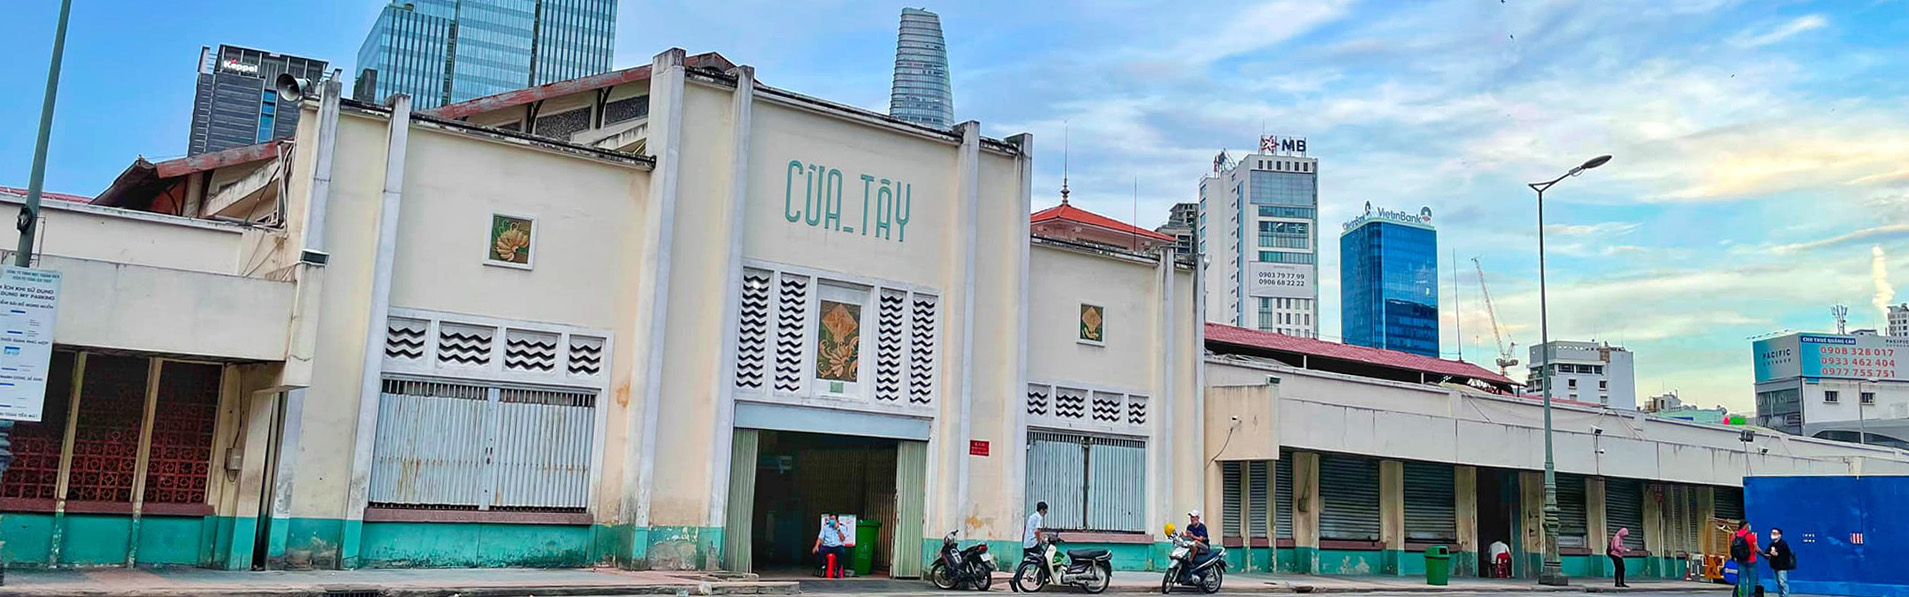 Khám phá chợ Bến Thành - biểu tượng bất hủ của Sài Gòn